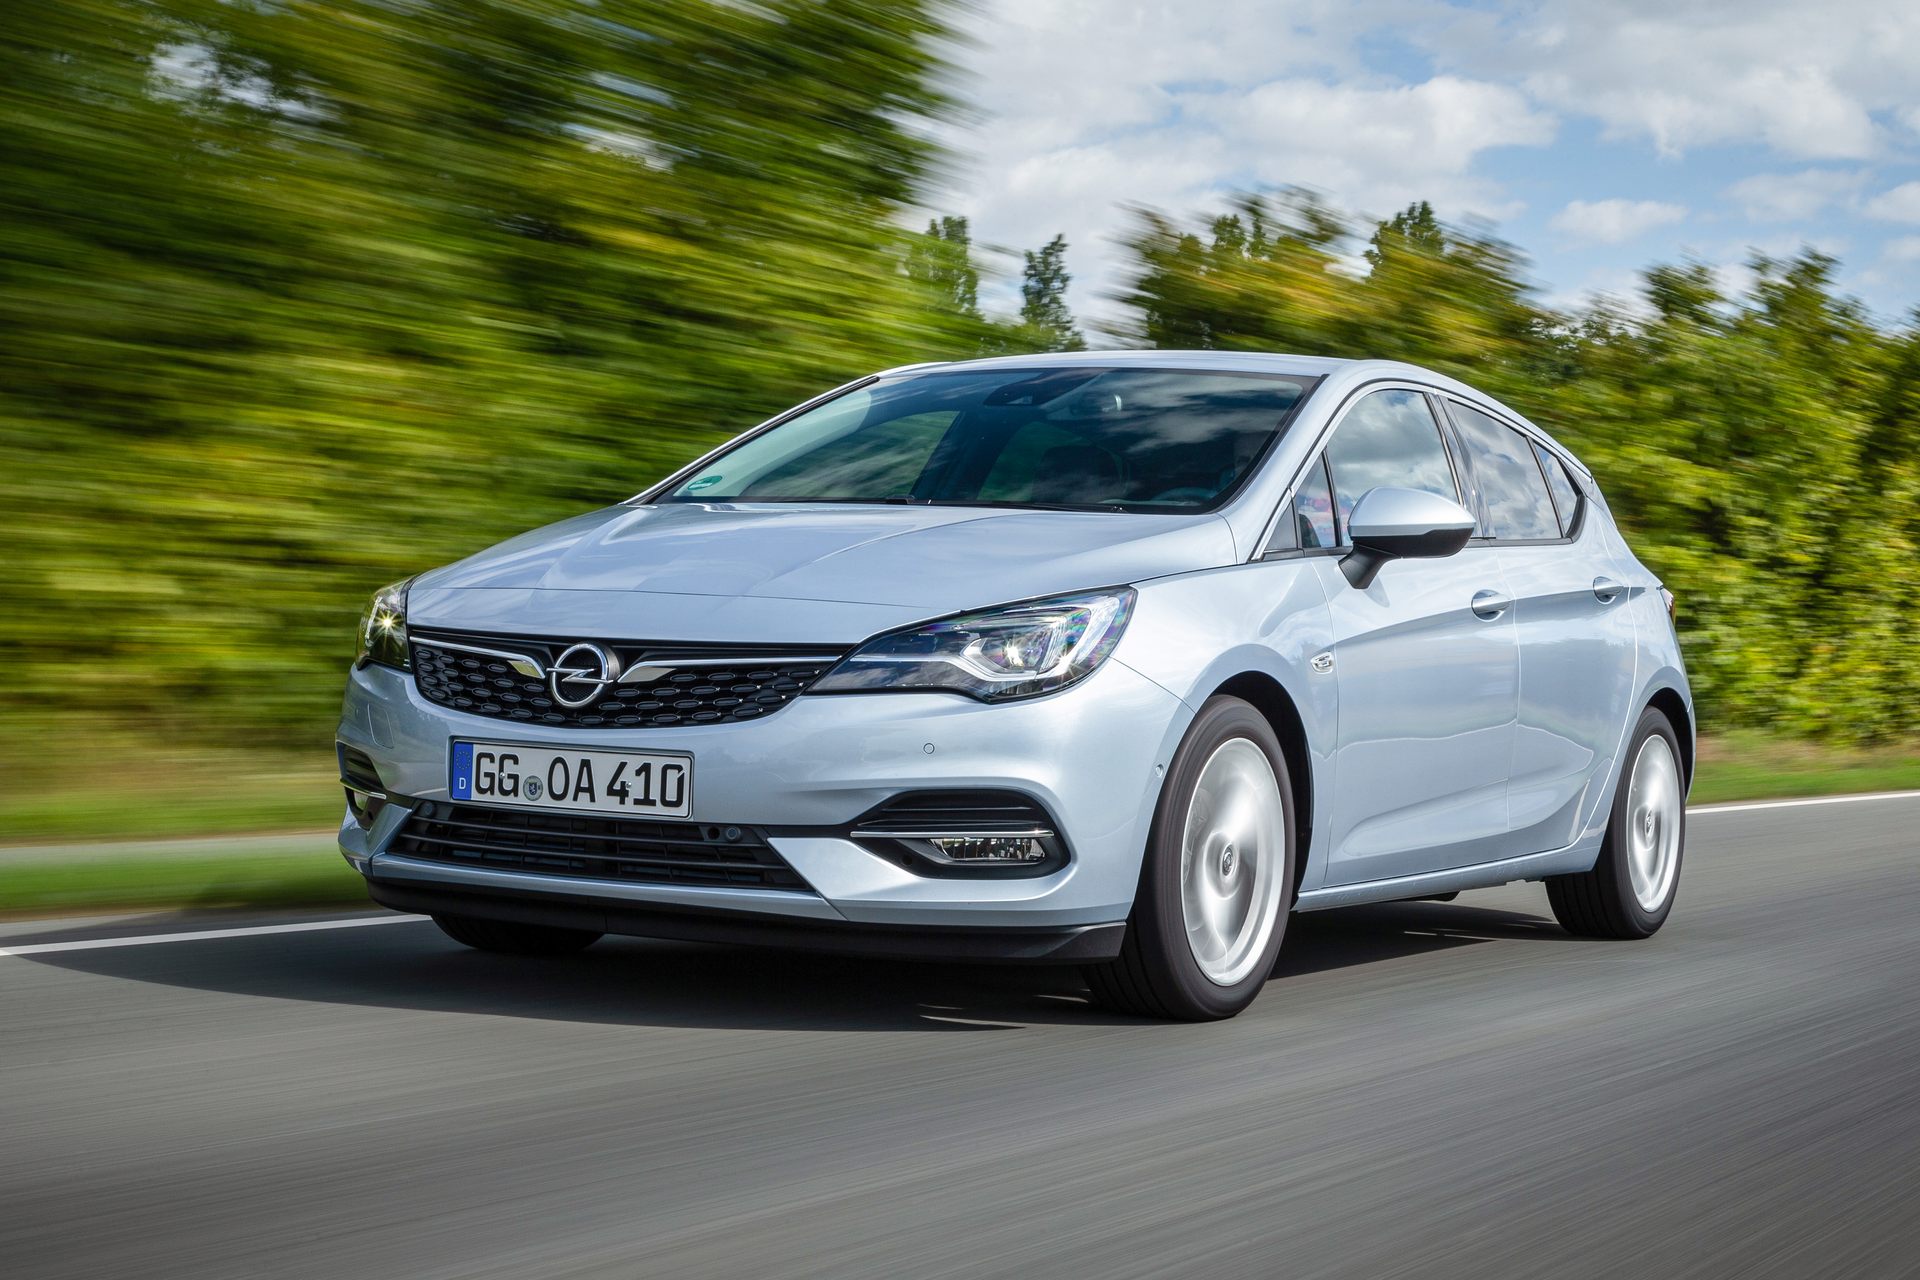 Σε ποιες εκδόσεις και τιμές ήρθε το ανανεωμένο Opel Astra στη χώρα μας;